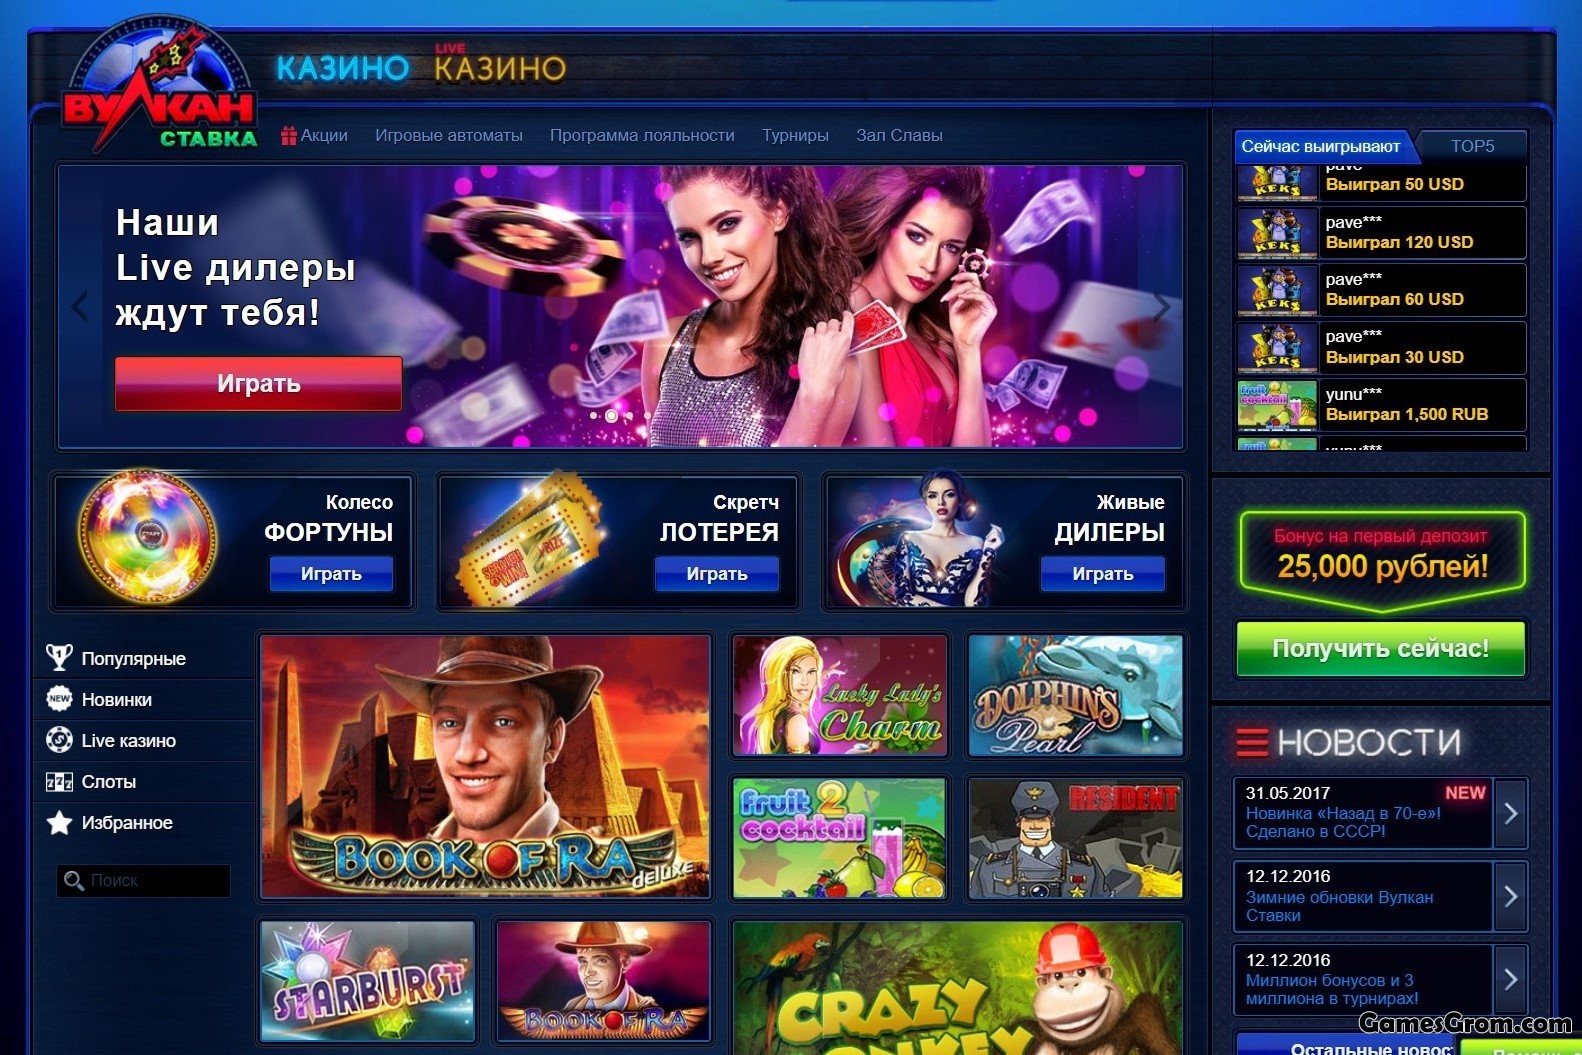 Вулкан игровые автоматы онлайн официальный азартные казино играть бесплатно онлайн